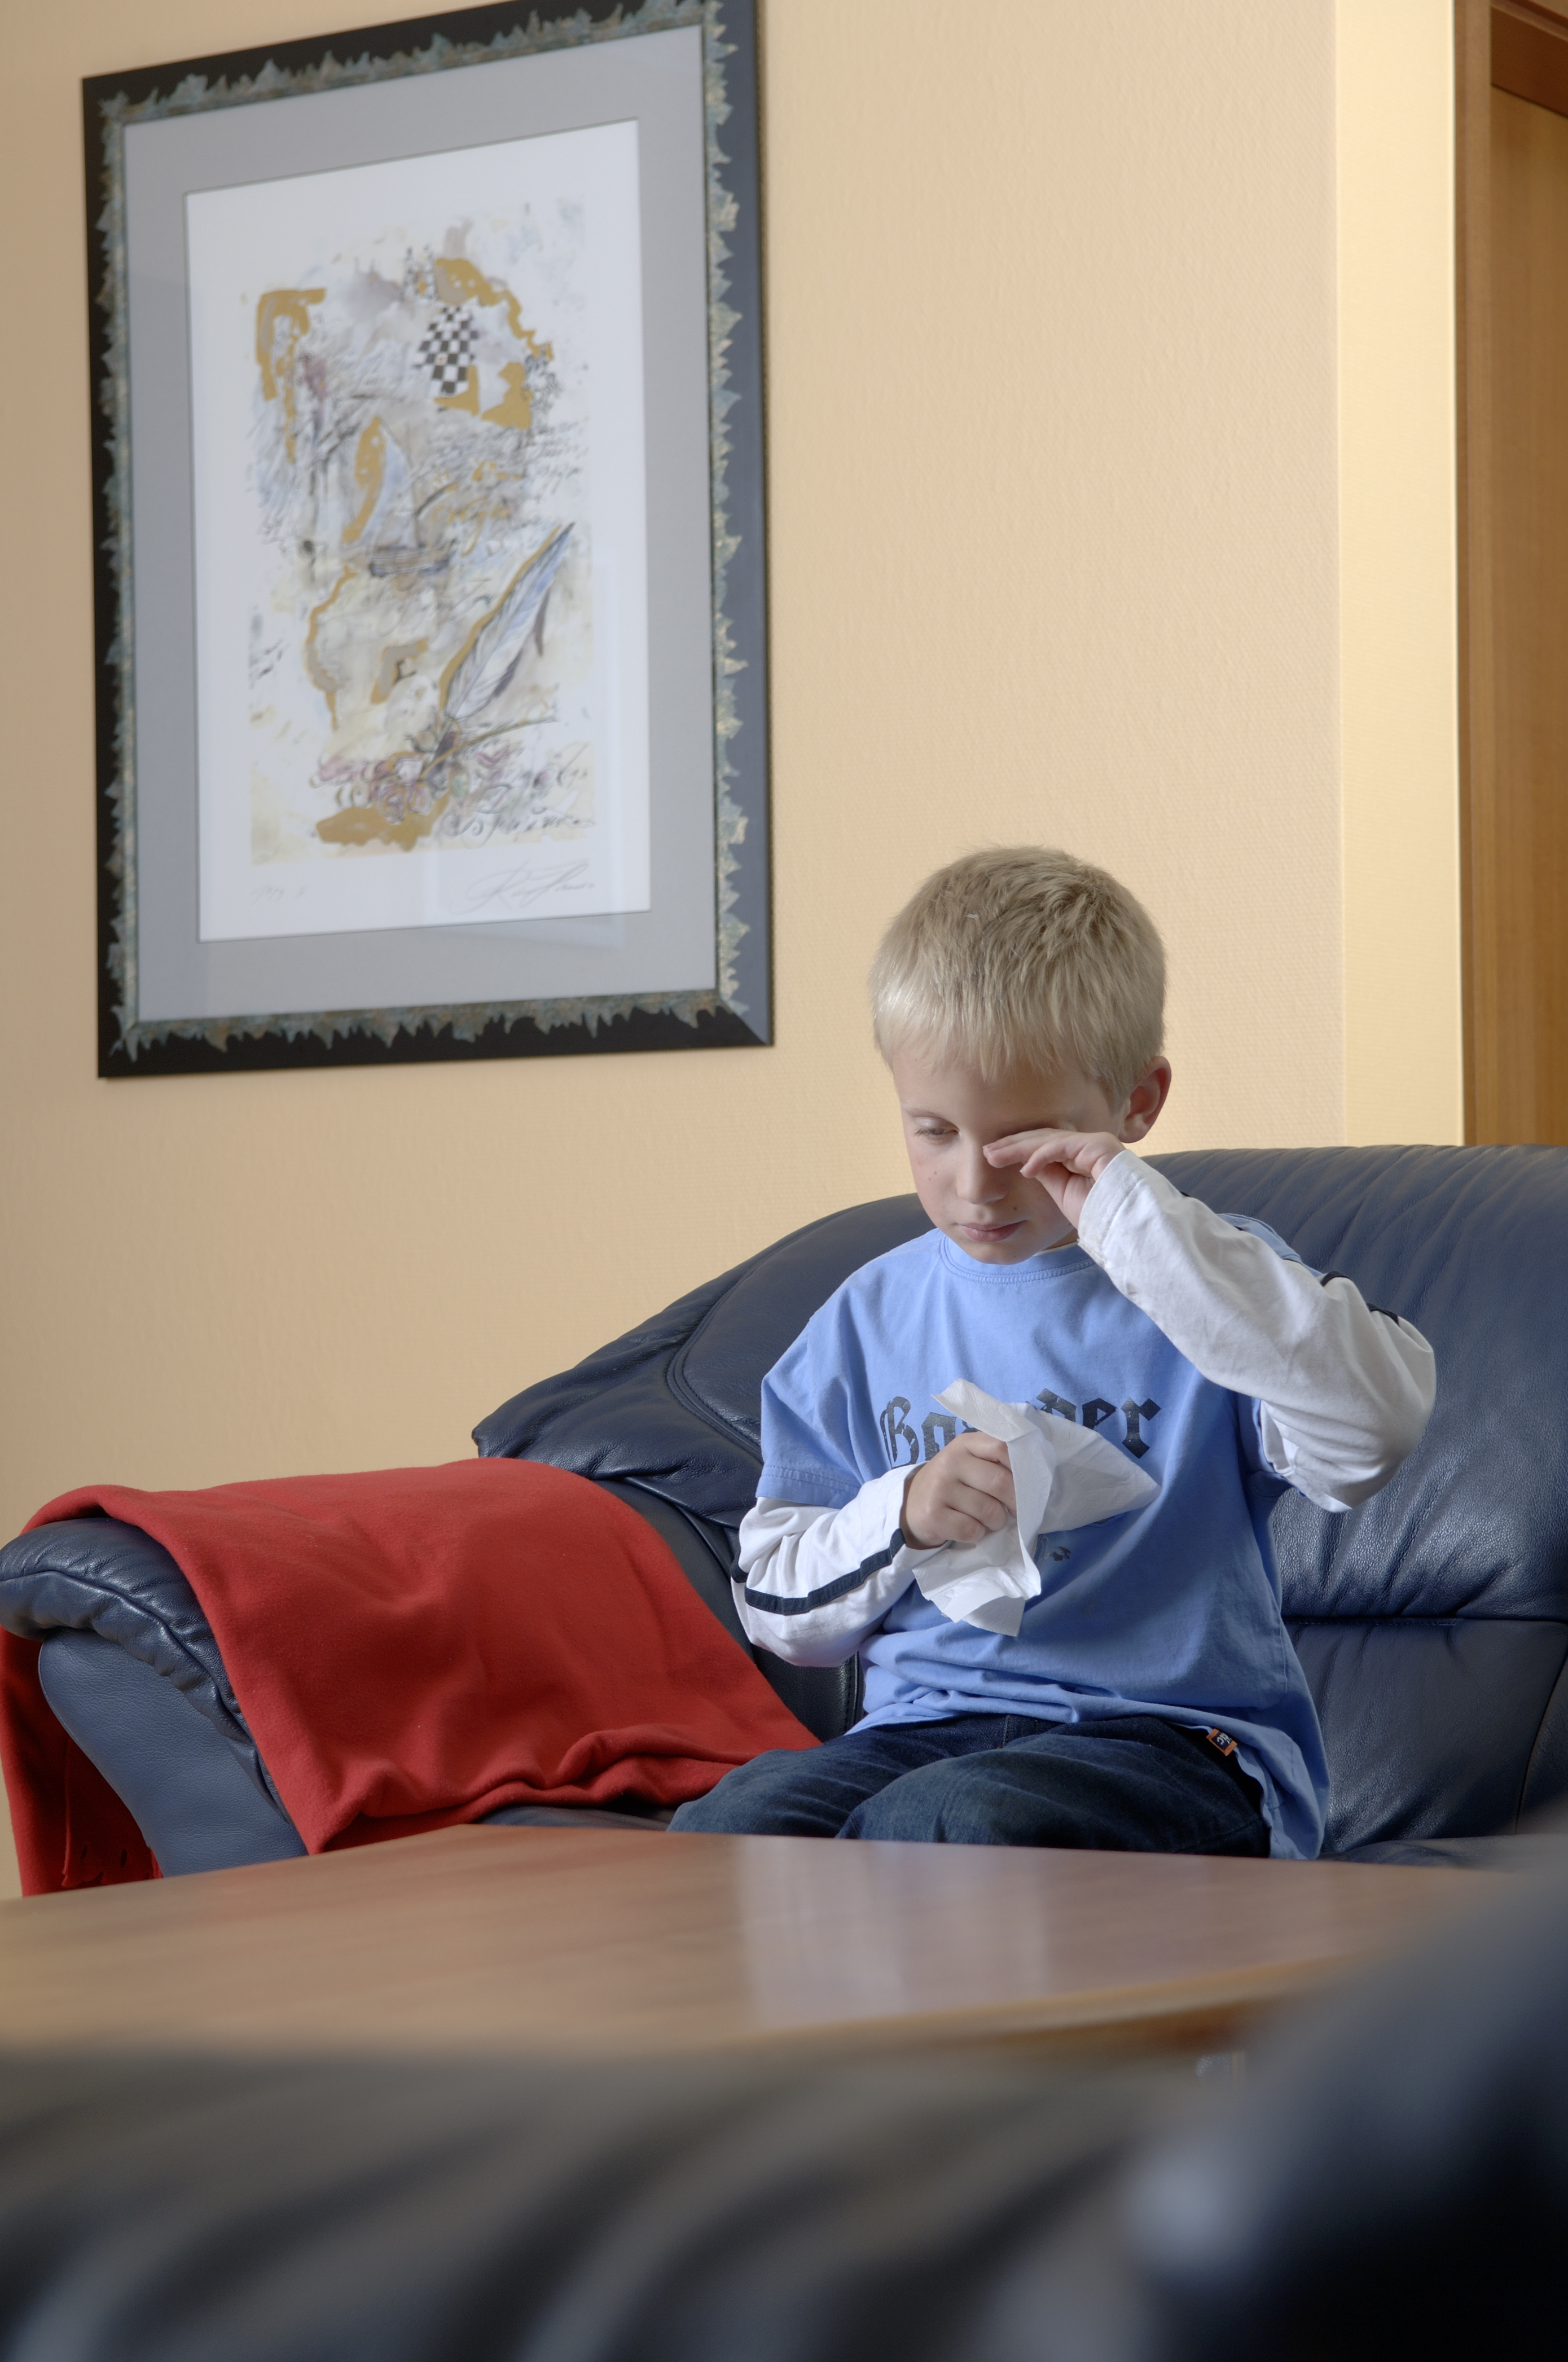 Feuchtigkeit in der Wohnung macht Kinder krank / Gezielte Sanierung schützt  Gesundheit